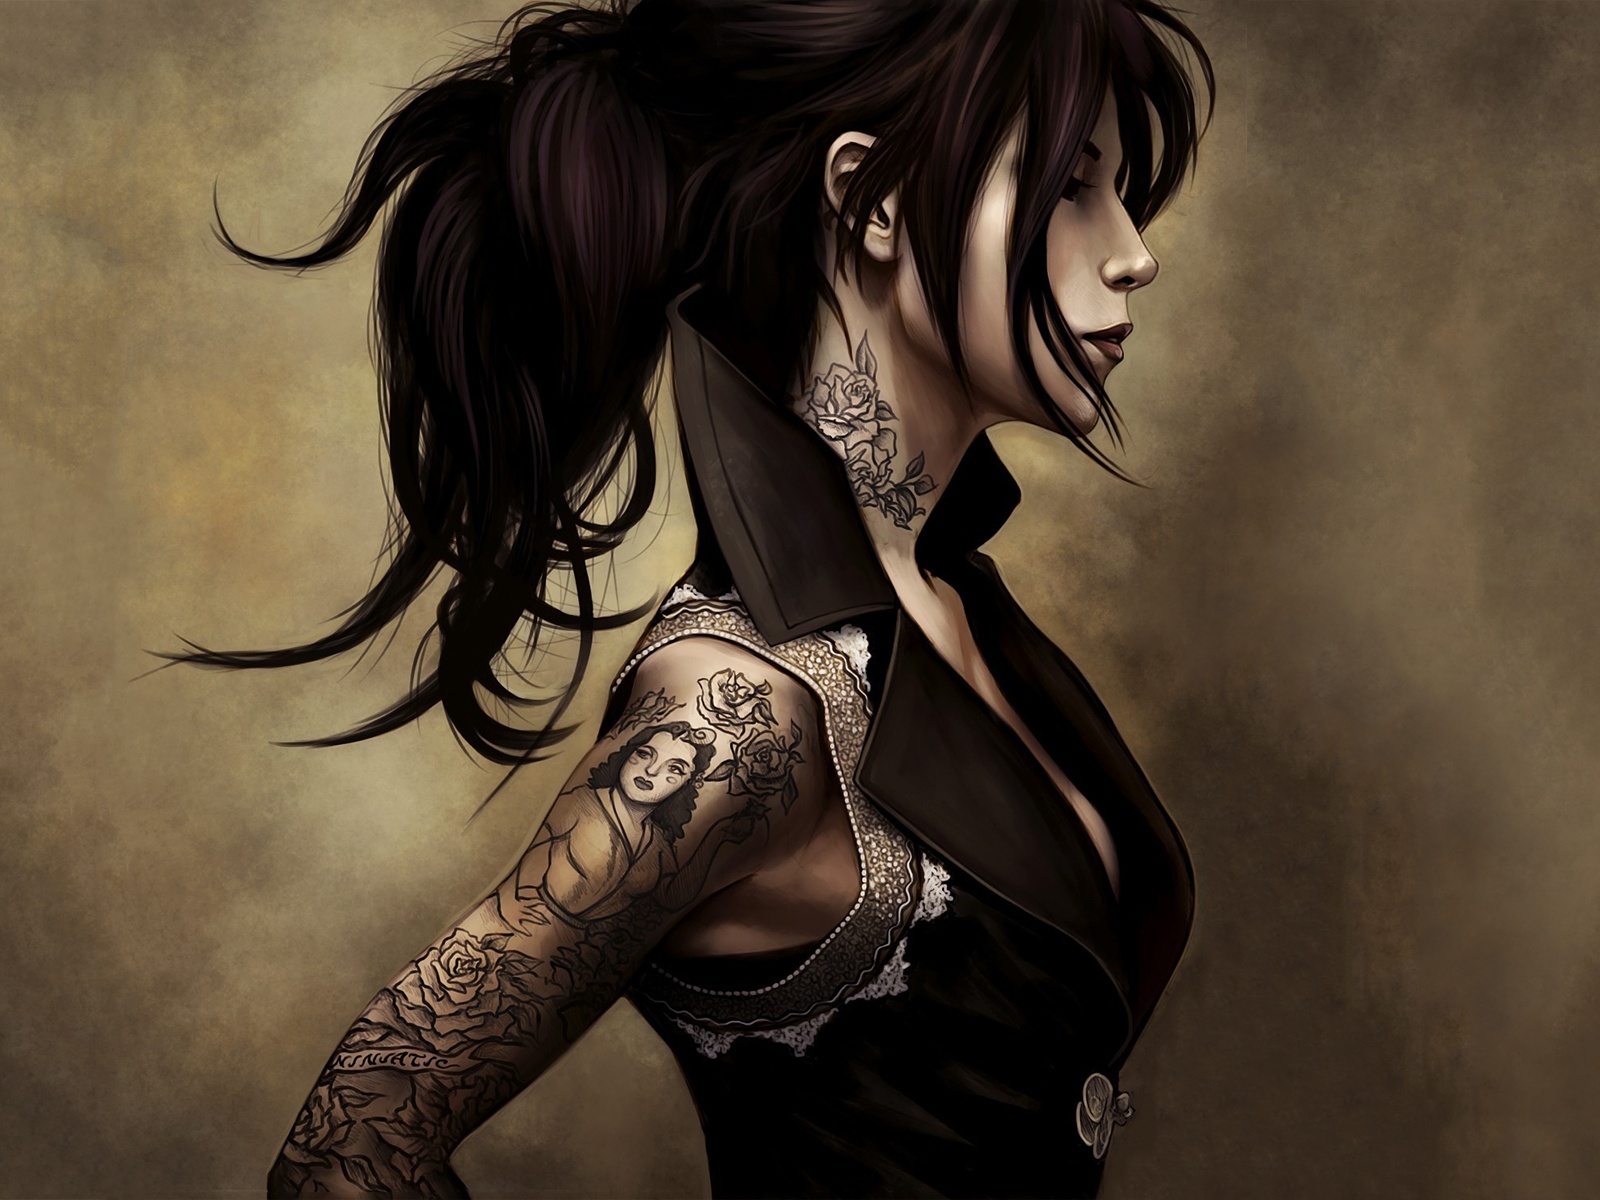 fond d'écran de tatouage,oeuvre de cg,illustration,cheveux noirs,cool,personnage fictif